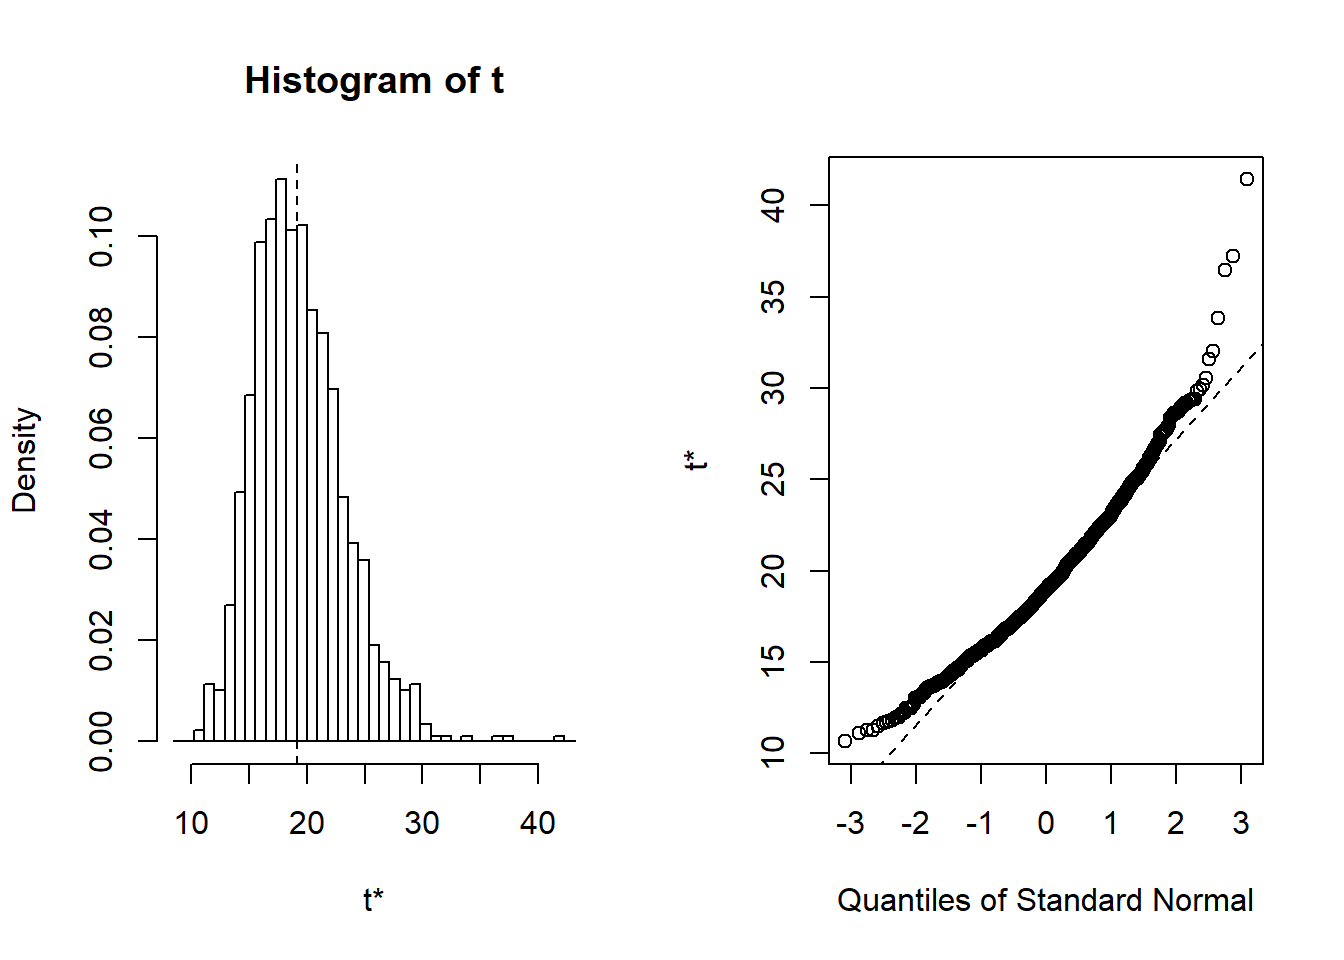 Distribución de las réplicas bootstrap. El panel de la izquierda es un histograma de réplicas. El panel de la derecha es un gráfico cuantil-cuantil, que compara la distribución bootstrap con la distribución normal estándar.